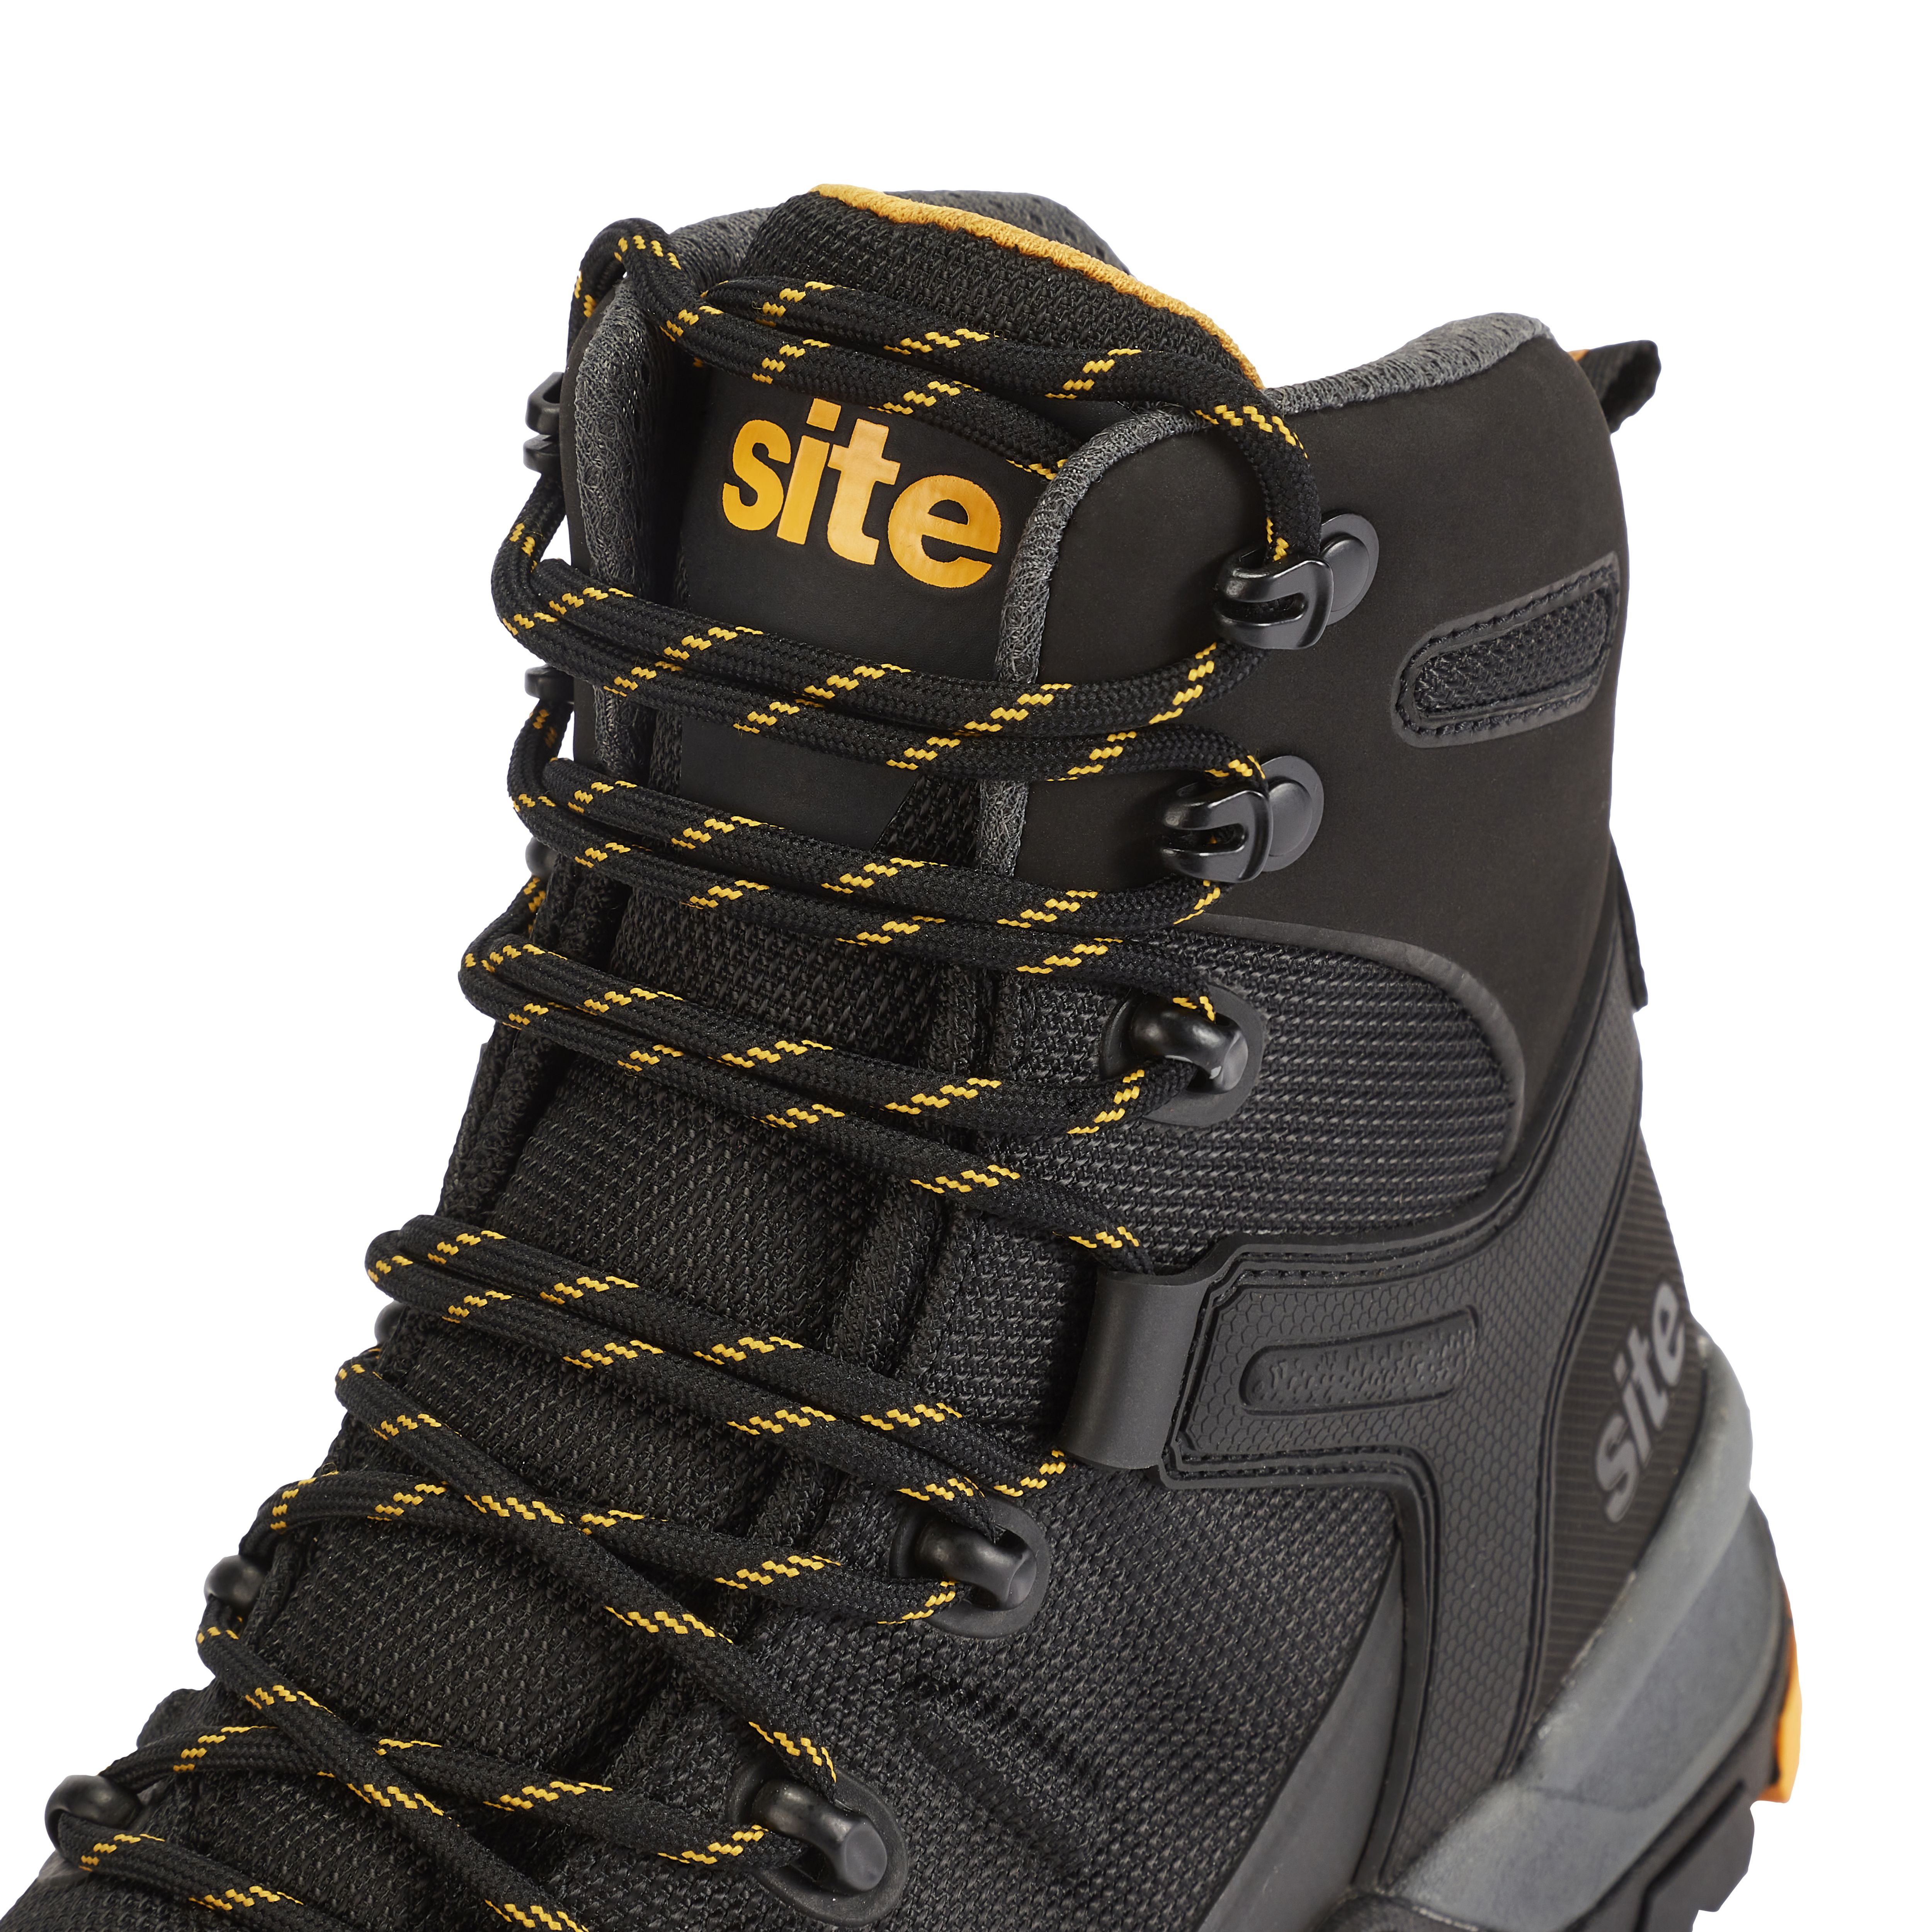 Site Densham Safety Boots Black Size 10 (851RV)